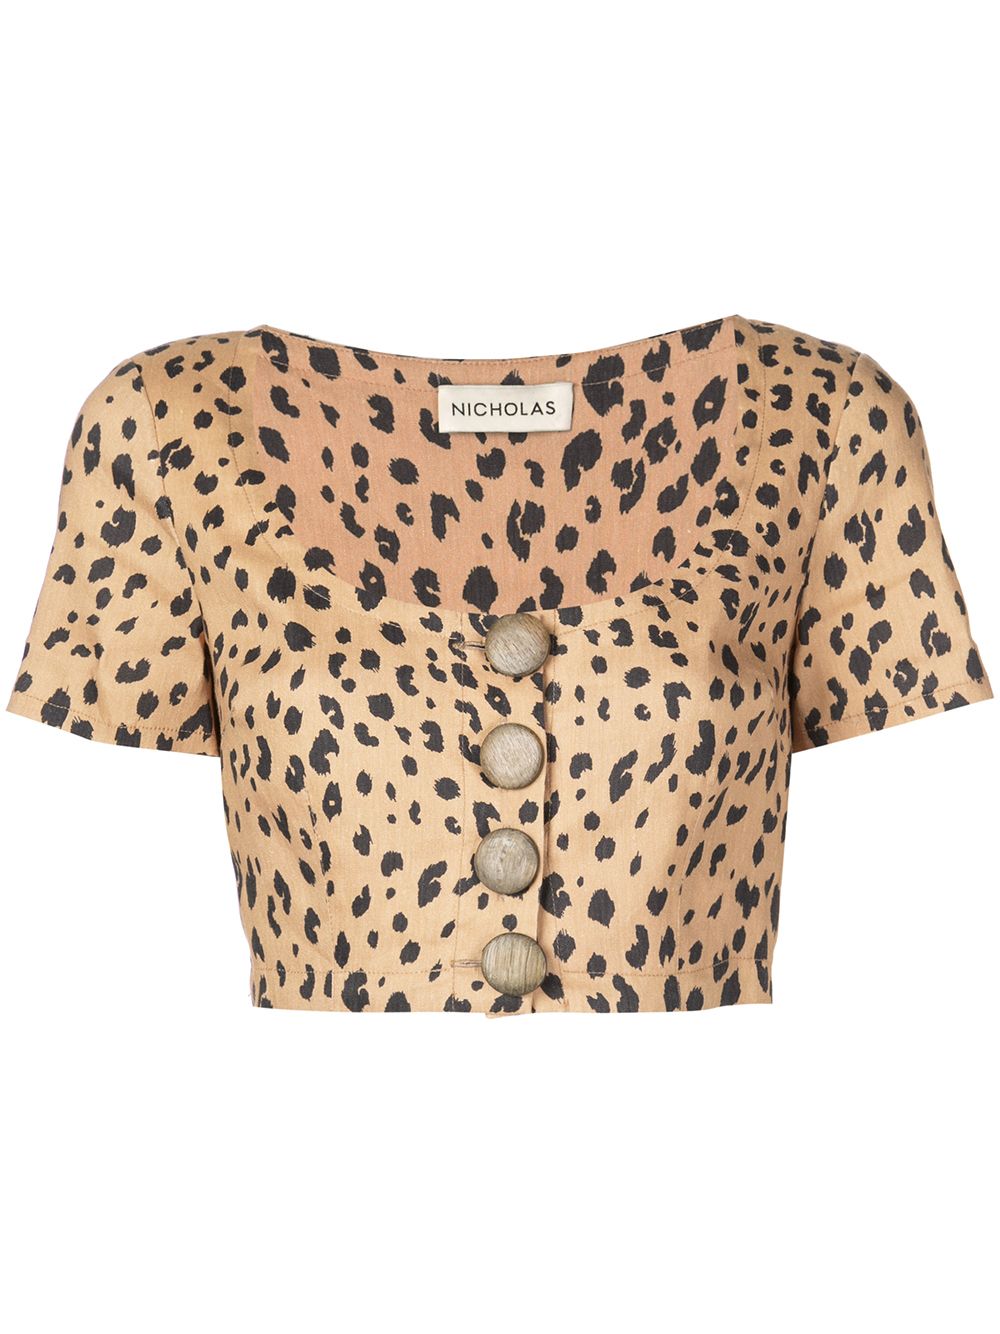 фото Nicholas блузка с леопардовым принтом